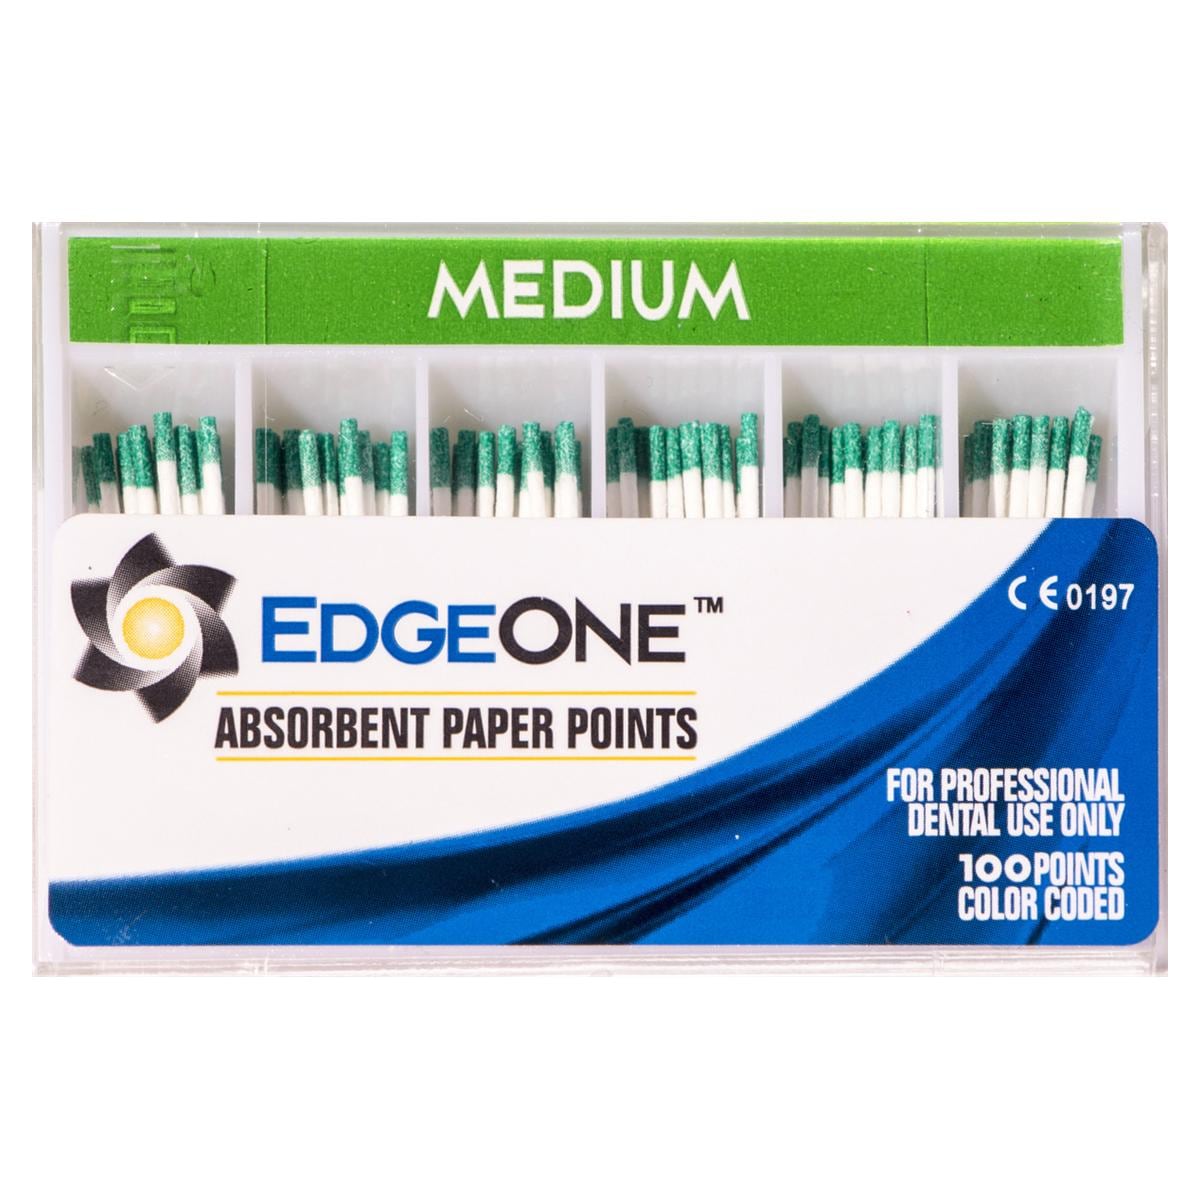 EdgeOne Absorbent Paper Points - Medium (groen), 100 stuks